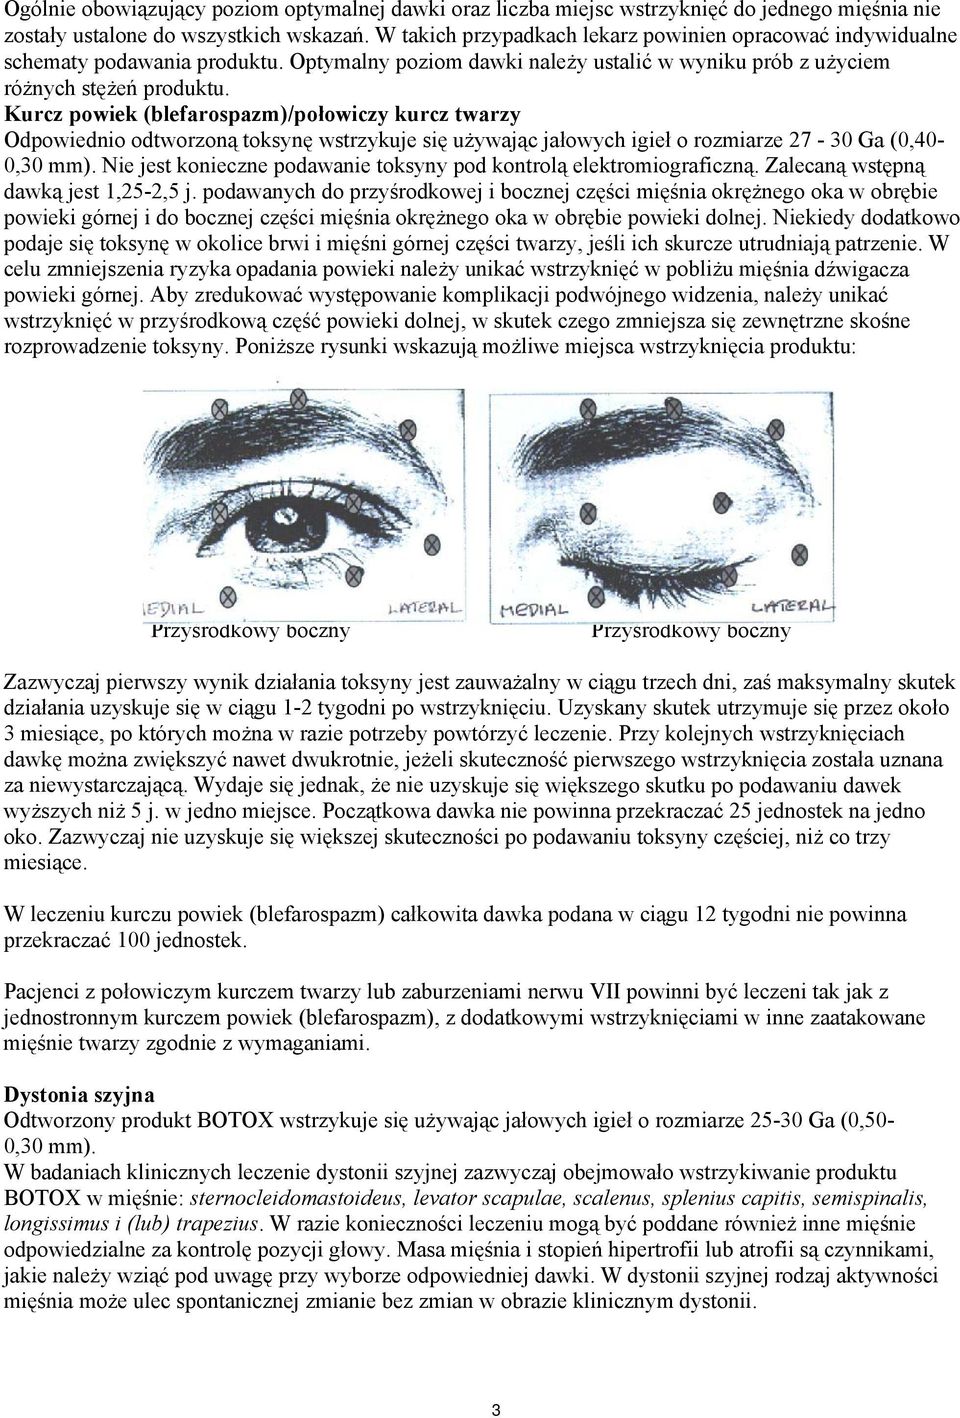 Kurcz powiek (blefarospazm)/połowiczy kurcz twarzy Odpowiednio odtworzoną toksynę wstrzykuje się używając jałowych igieł o rozmiarze 27-30 Ga (0,40-0,30 mm).